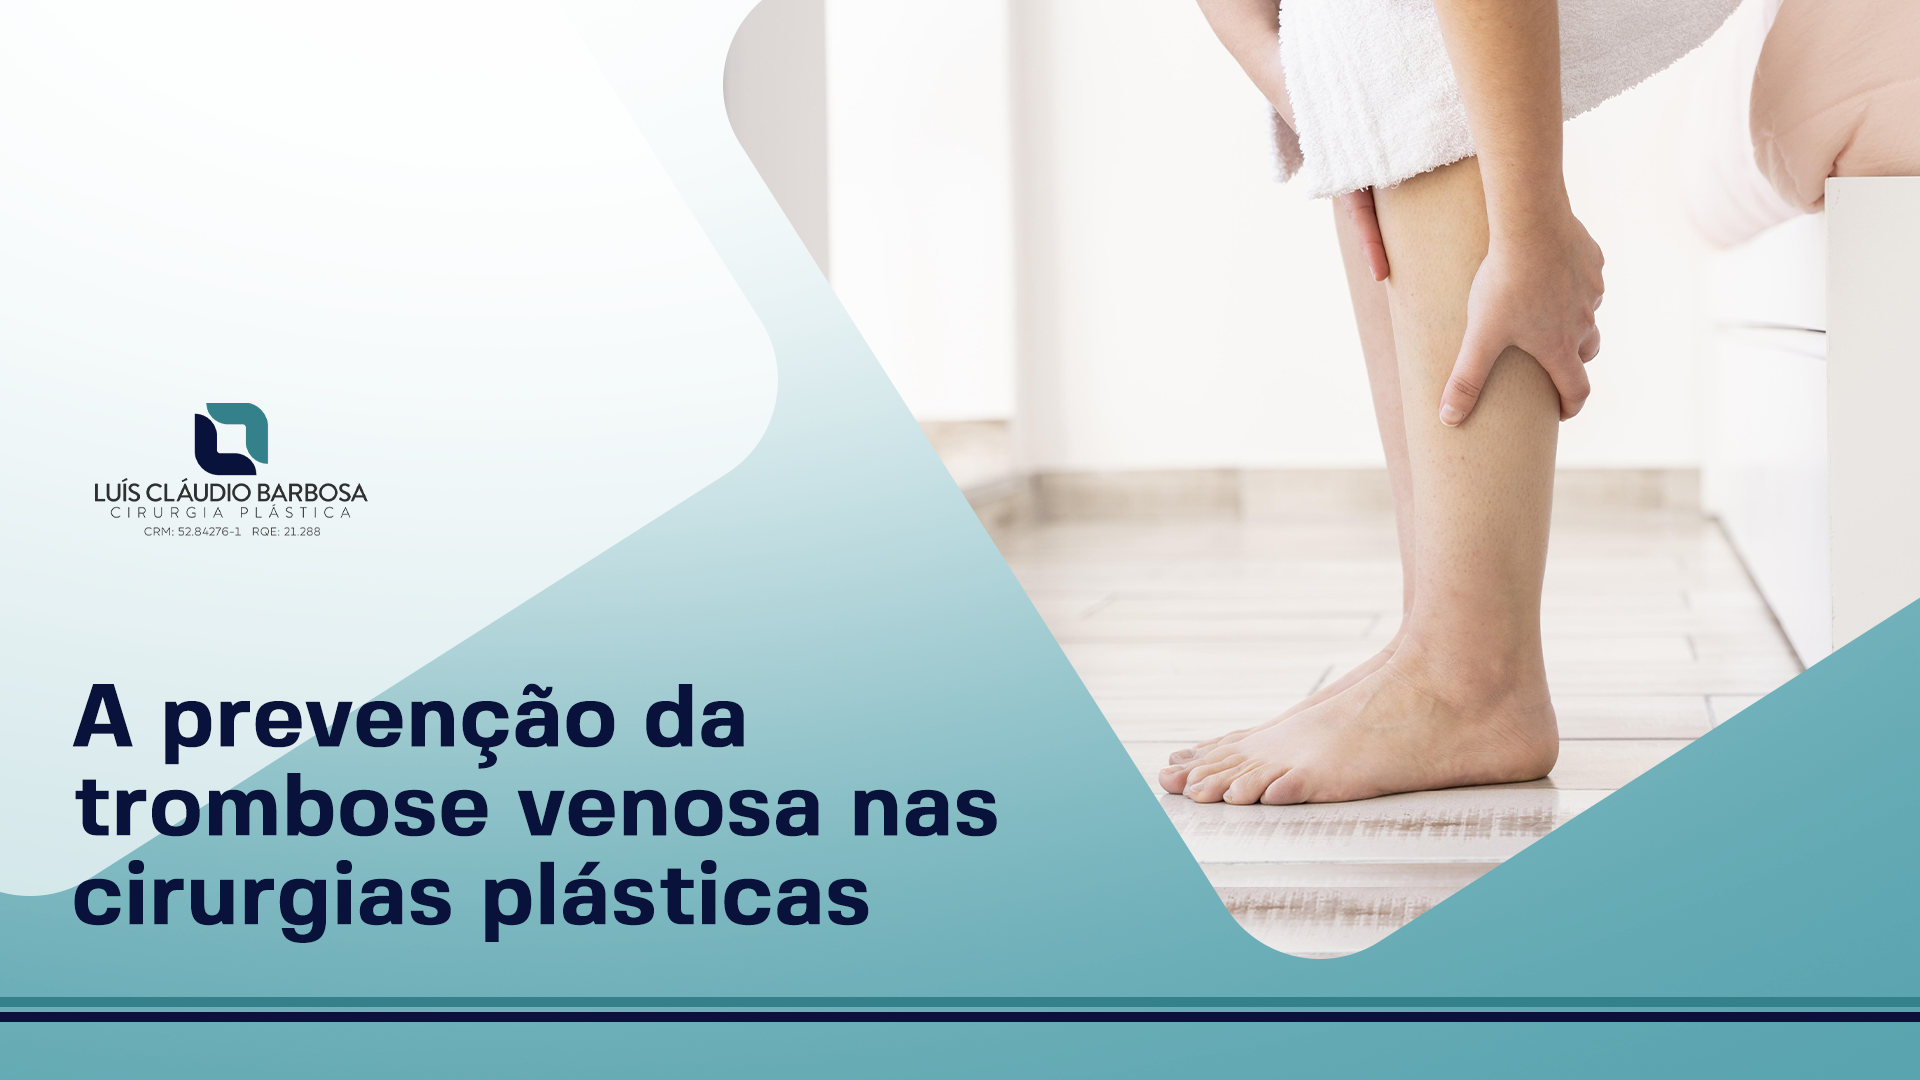 Dr. Luís Cláudio Barbosa | A prevenção da trombose venosa nas cirurgias plásticas